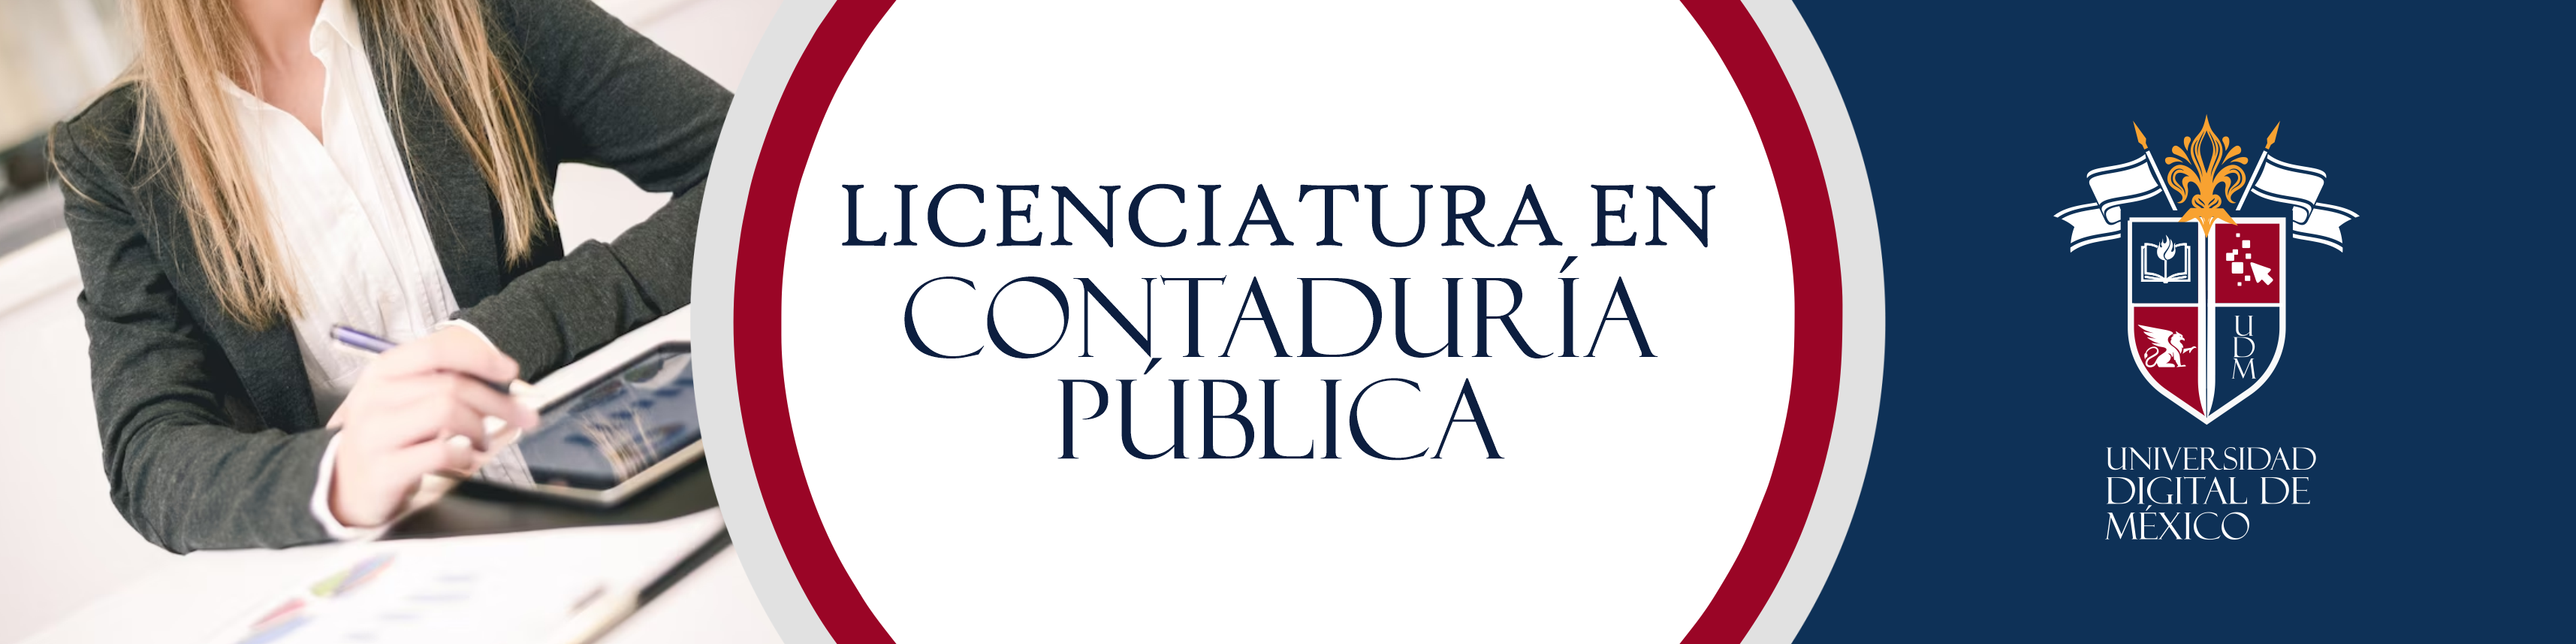 Licenciatura en Contaduría Pública.